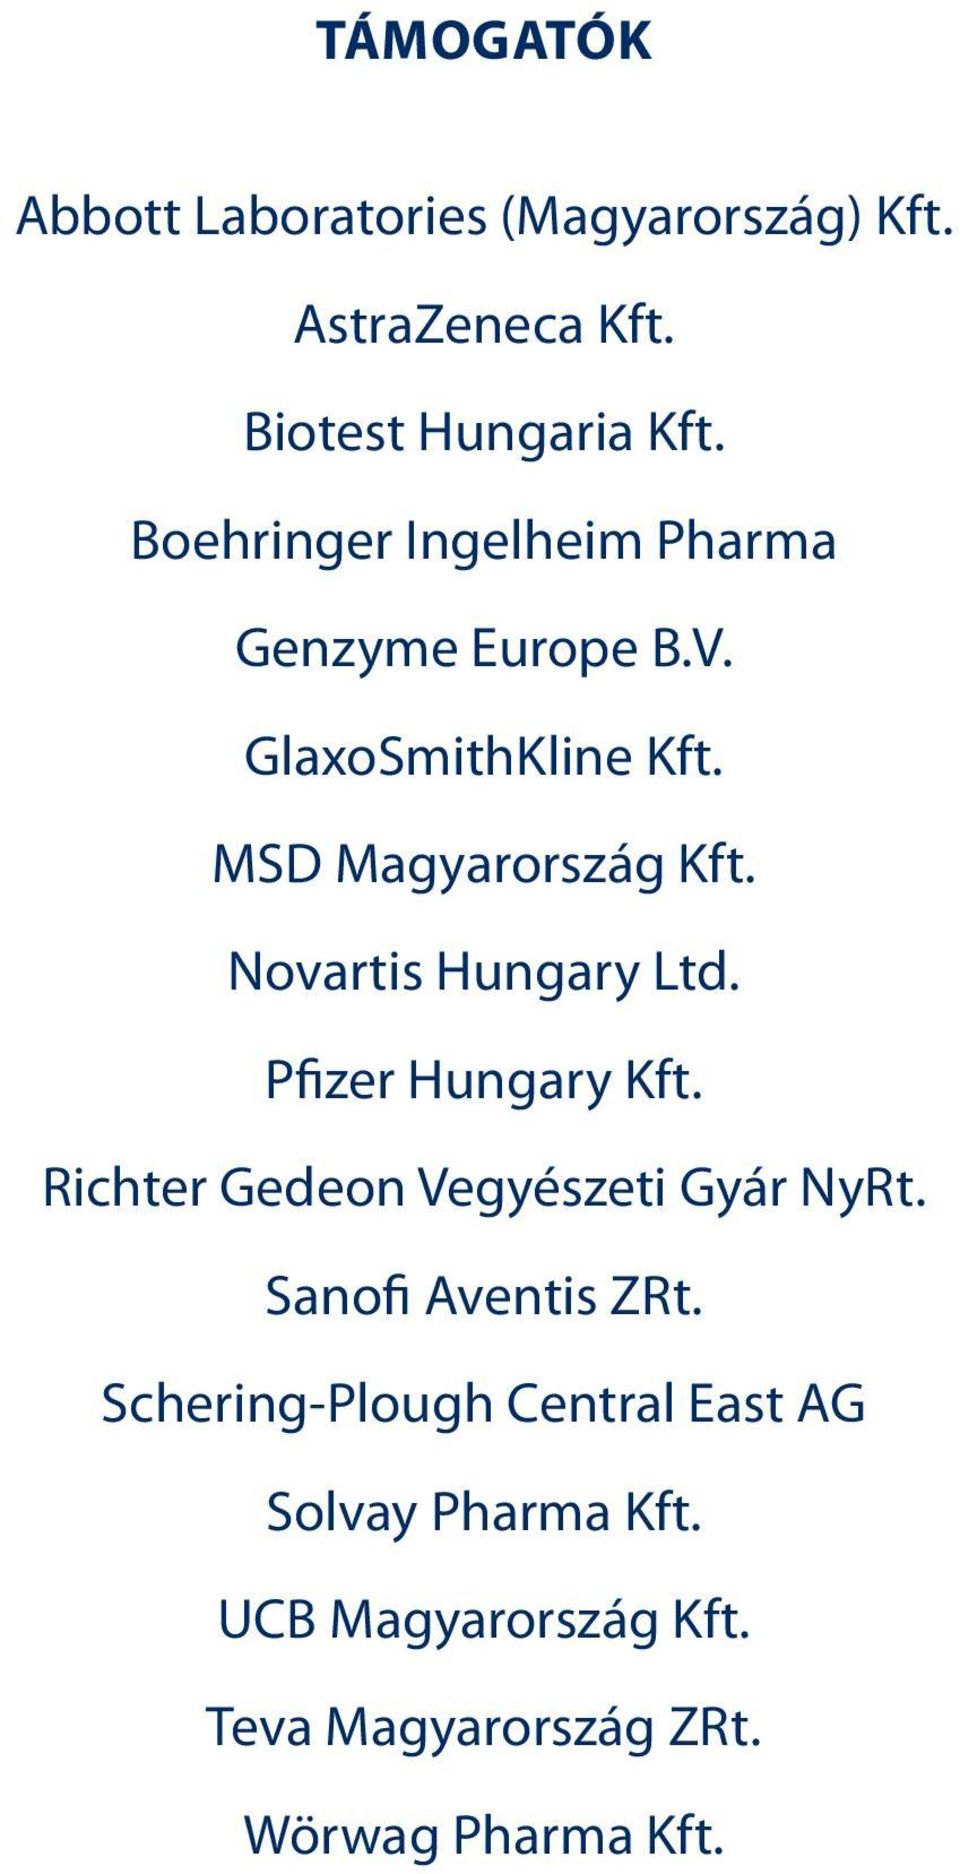 Novartis Hungary Ltd. Pfizer Hungary Kft. Richter Gedeon Vegyészeti Gyár NyRt. Sanofi Aventis ZRt.